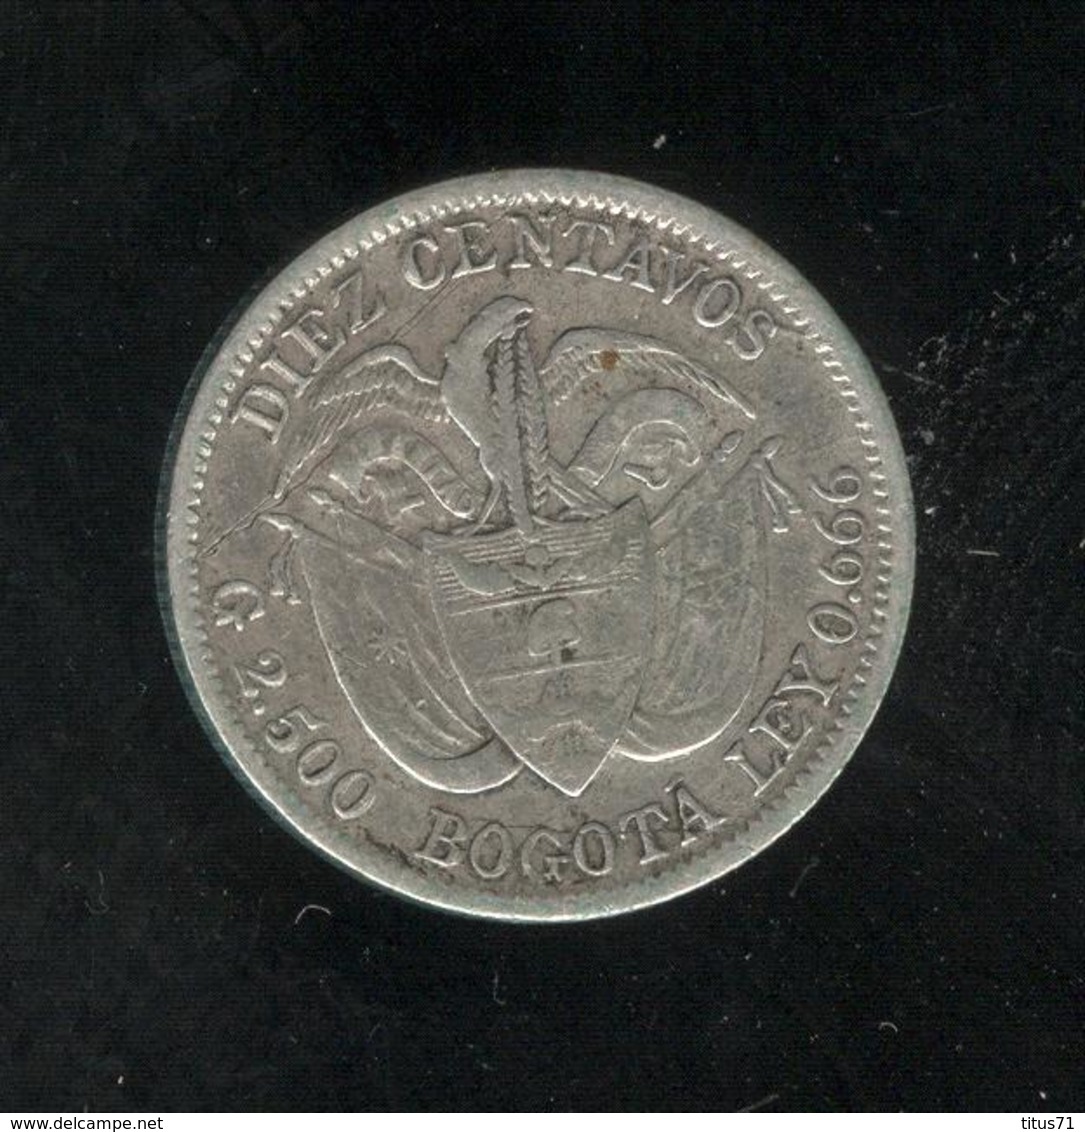 10 Centavos / Diez Centavos Colombie / Colombia 1897 - Colombia